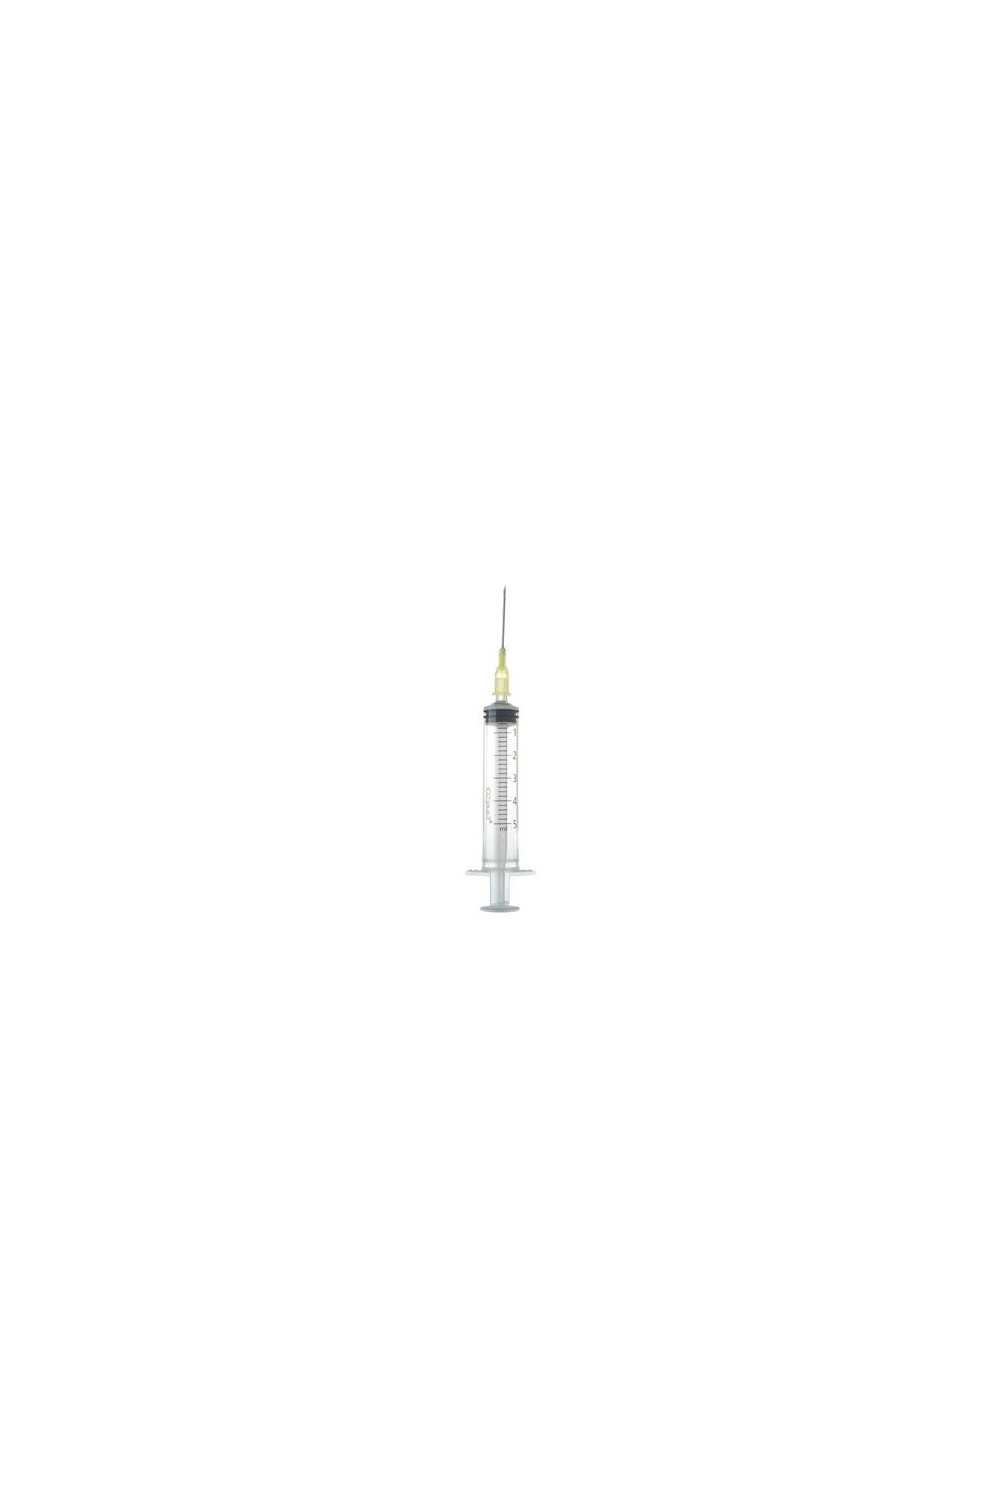 Ico Sterile Syringe 20ml 40/8 With Needle